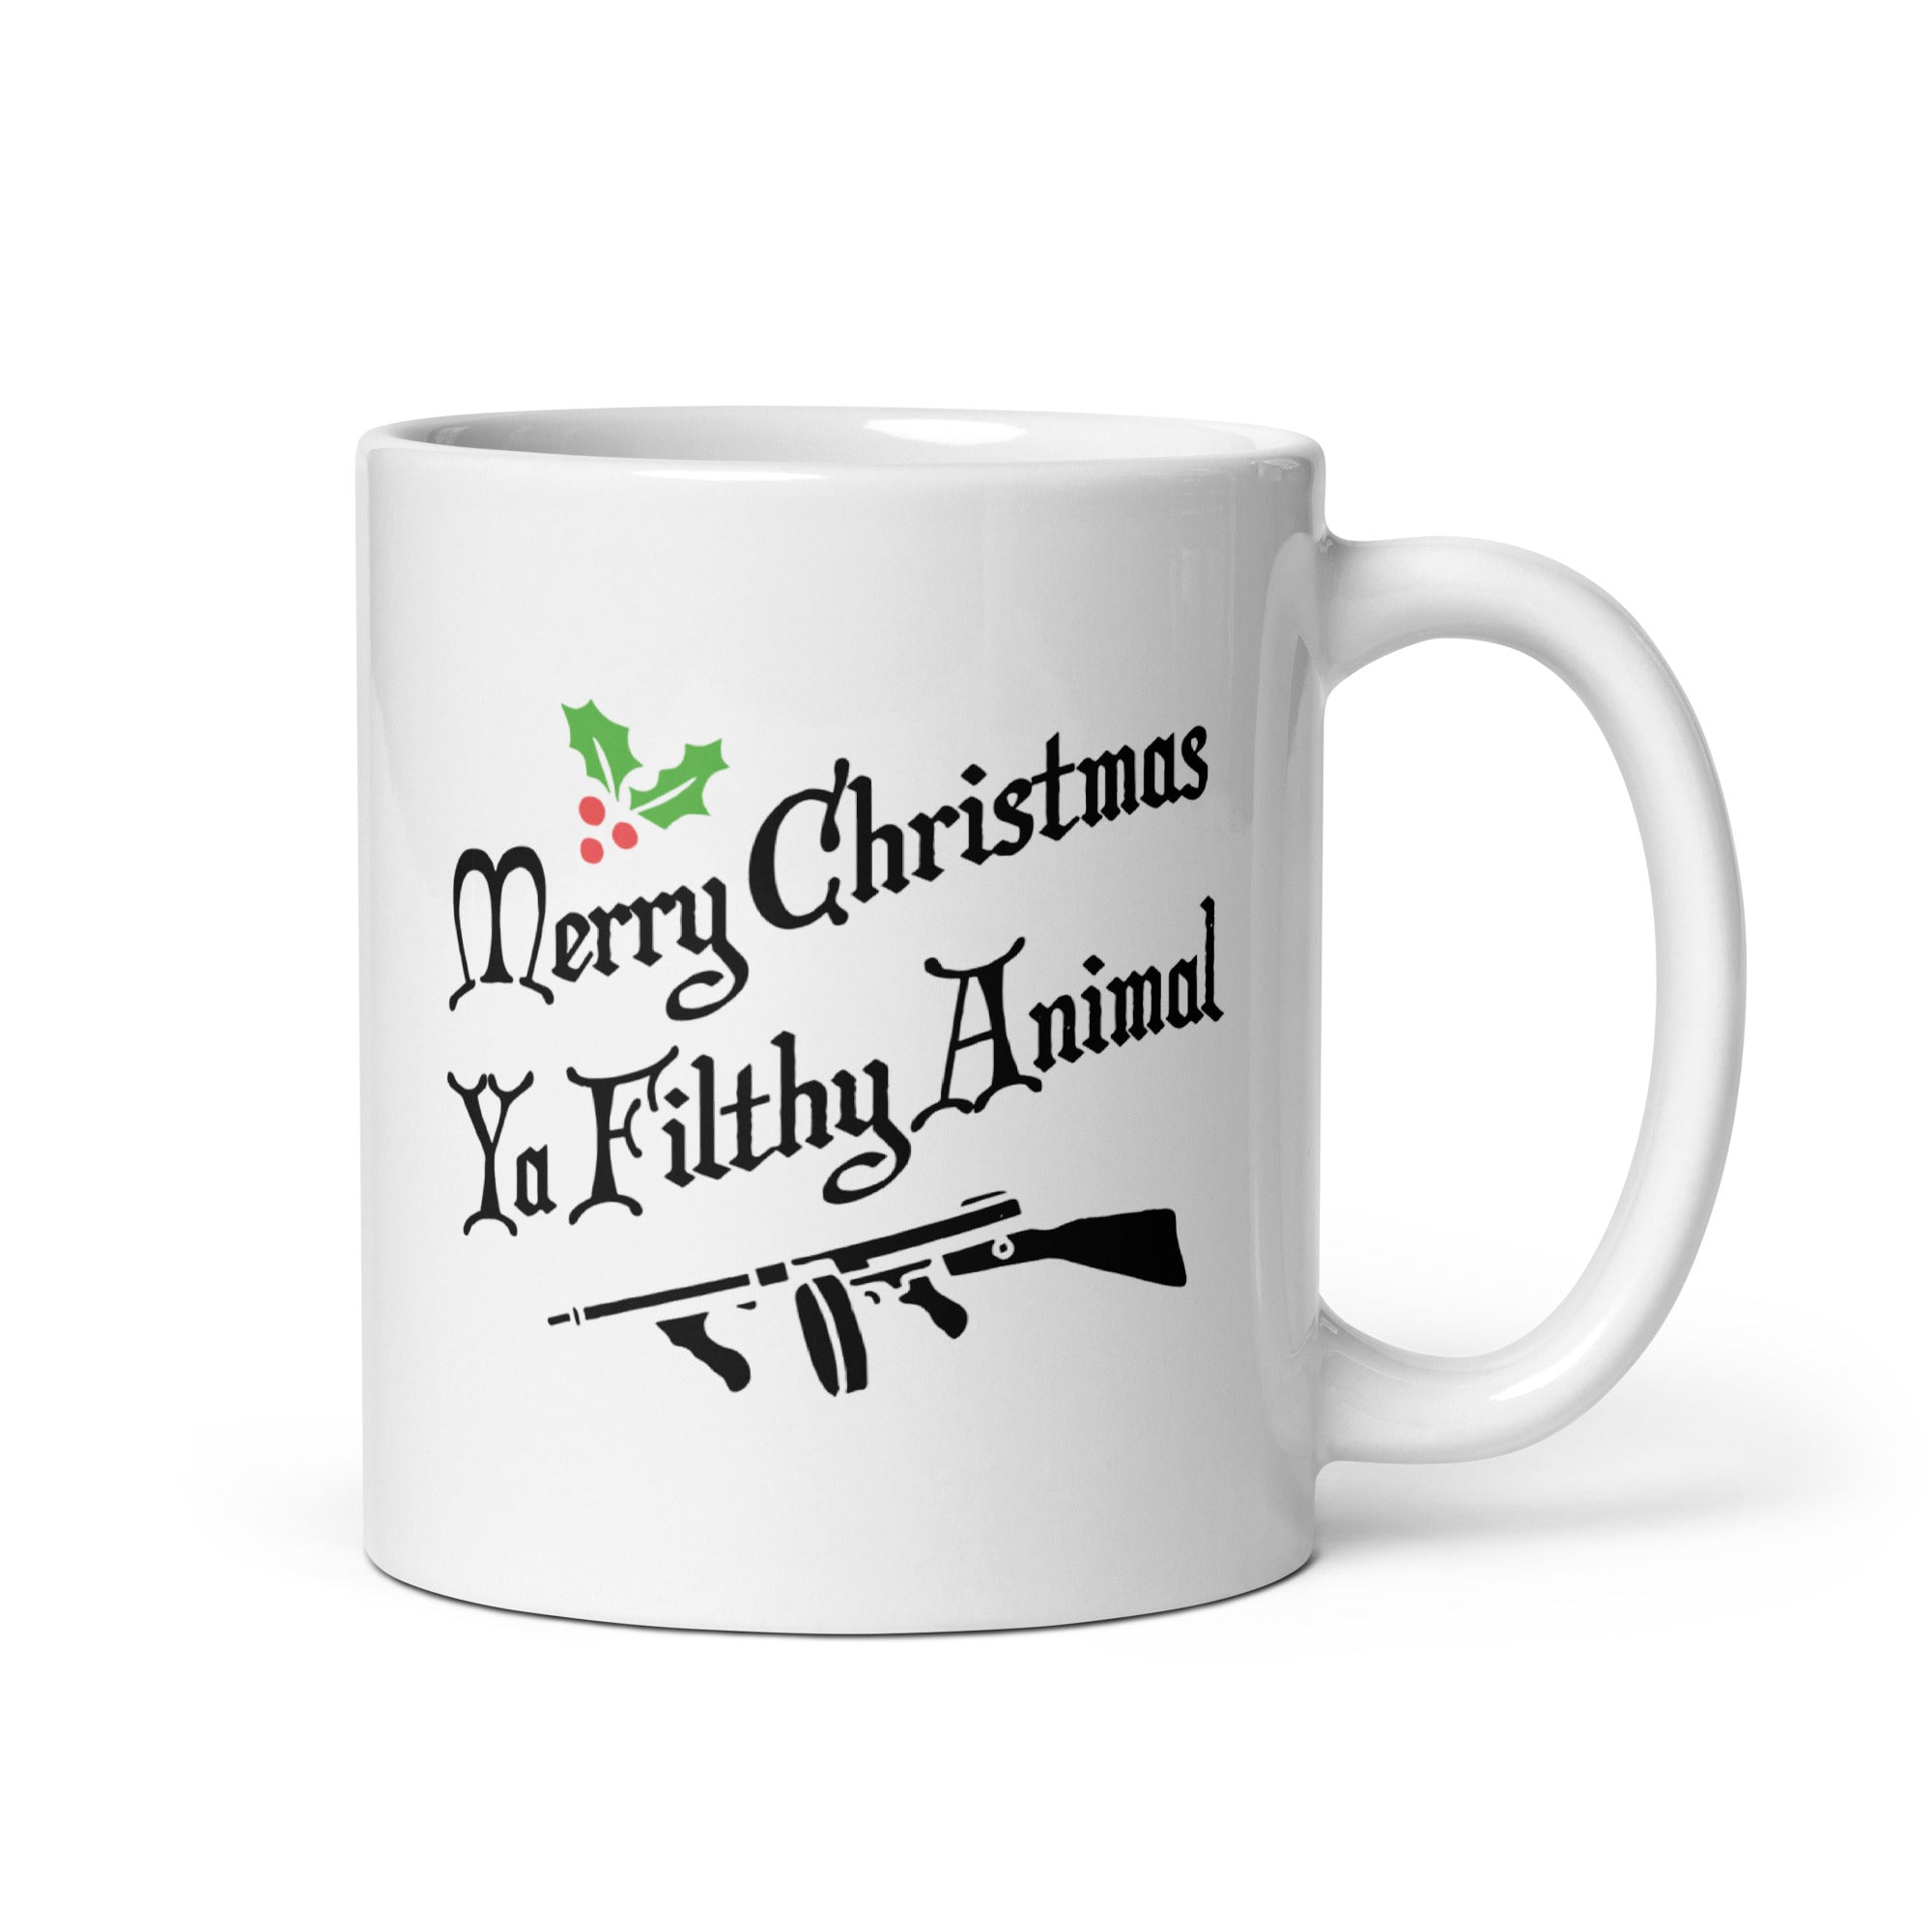 Merry Christmas Ya Filthy Animal - 11oz Coffee Mug